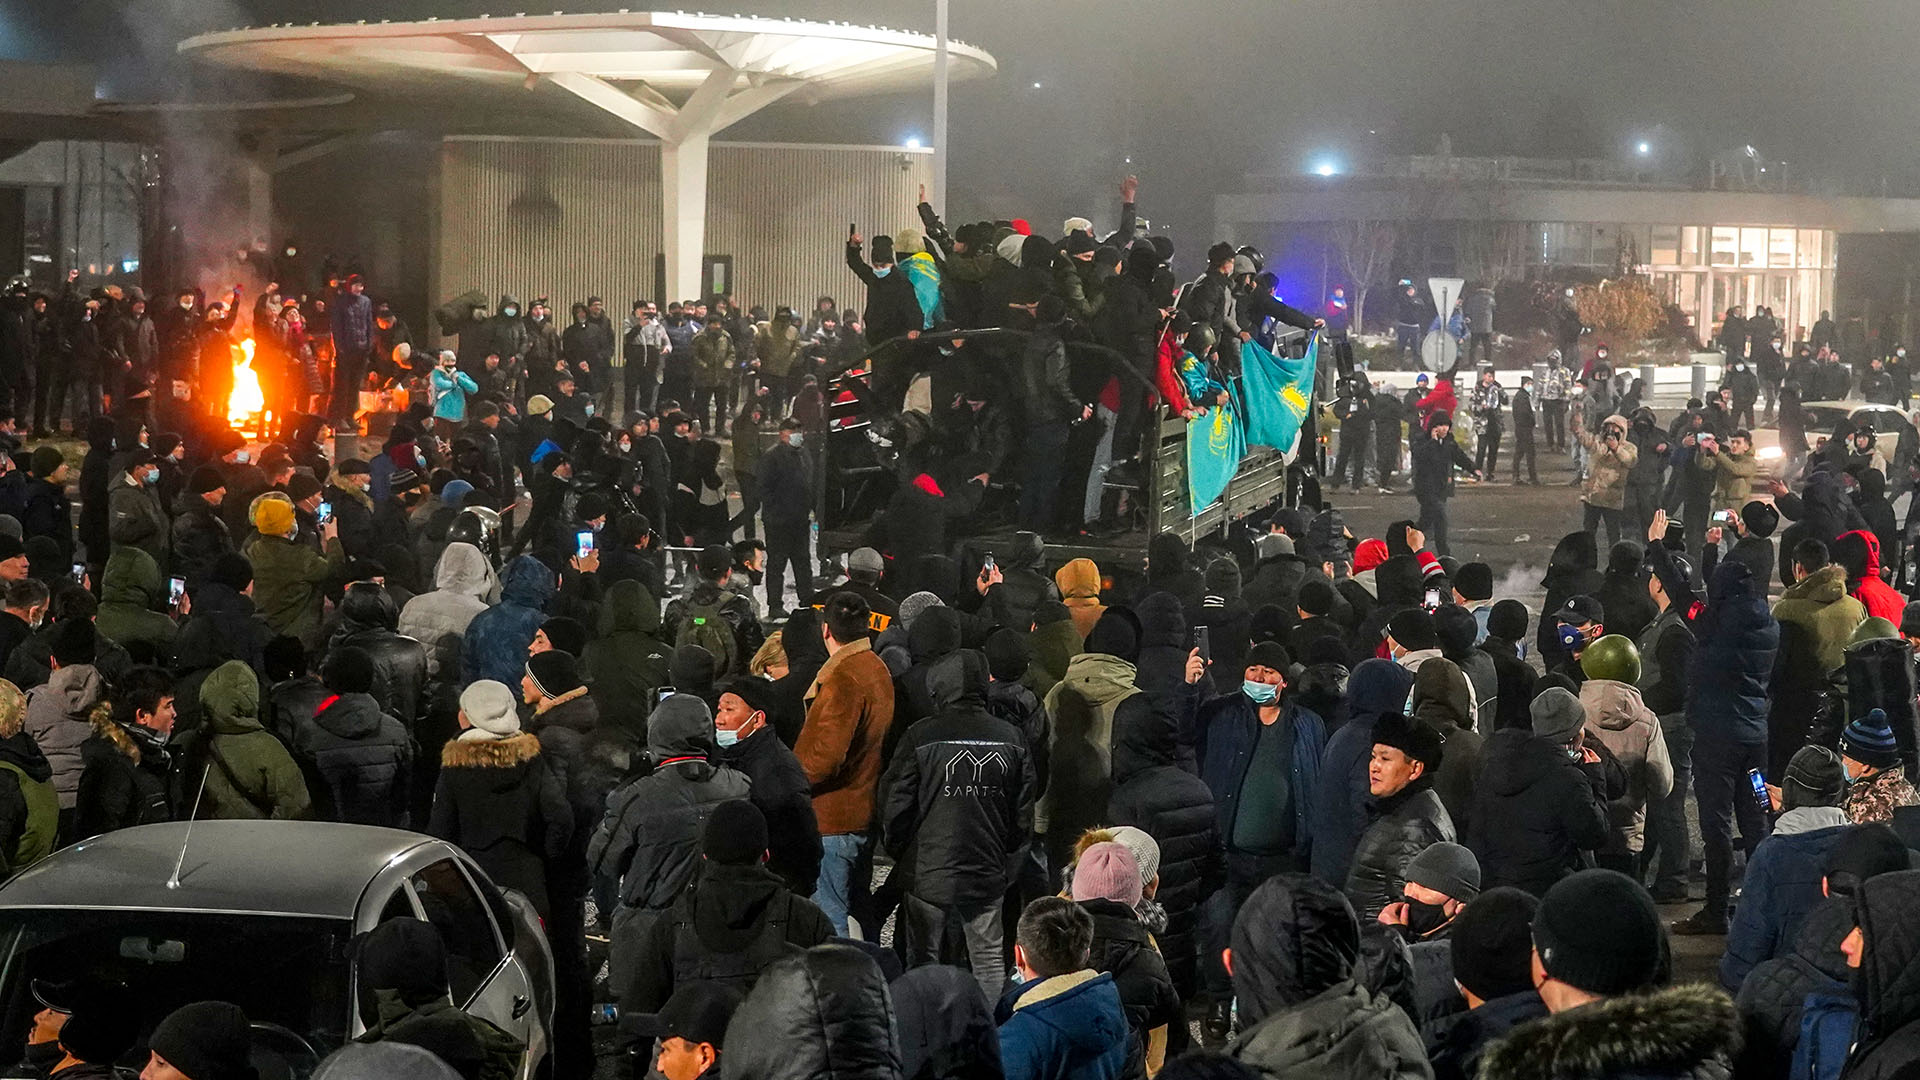 Las manifestaciones se desataron el pasado 2 de enero en respuesta al incremento de los precios del gas licuado, el principal combustible automotriz utilizado en esta nación centroasiática (Abduaziz MADYAROV / AFP)